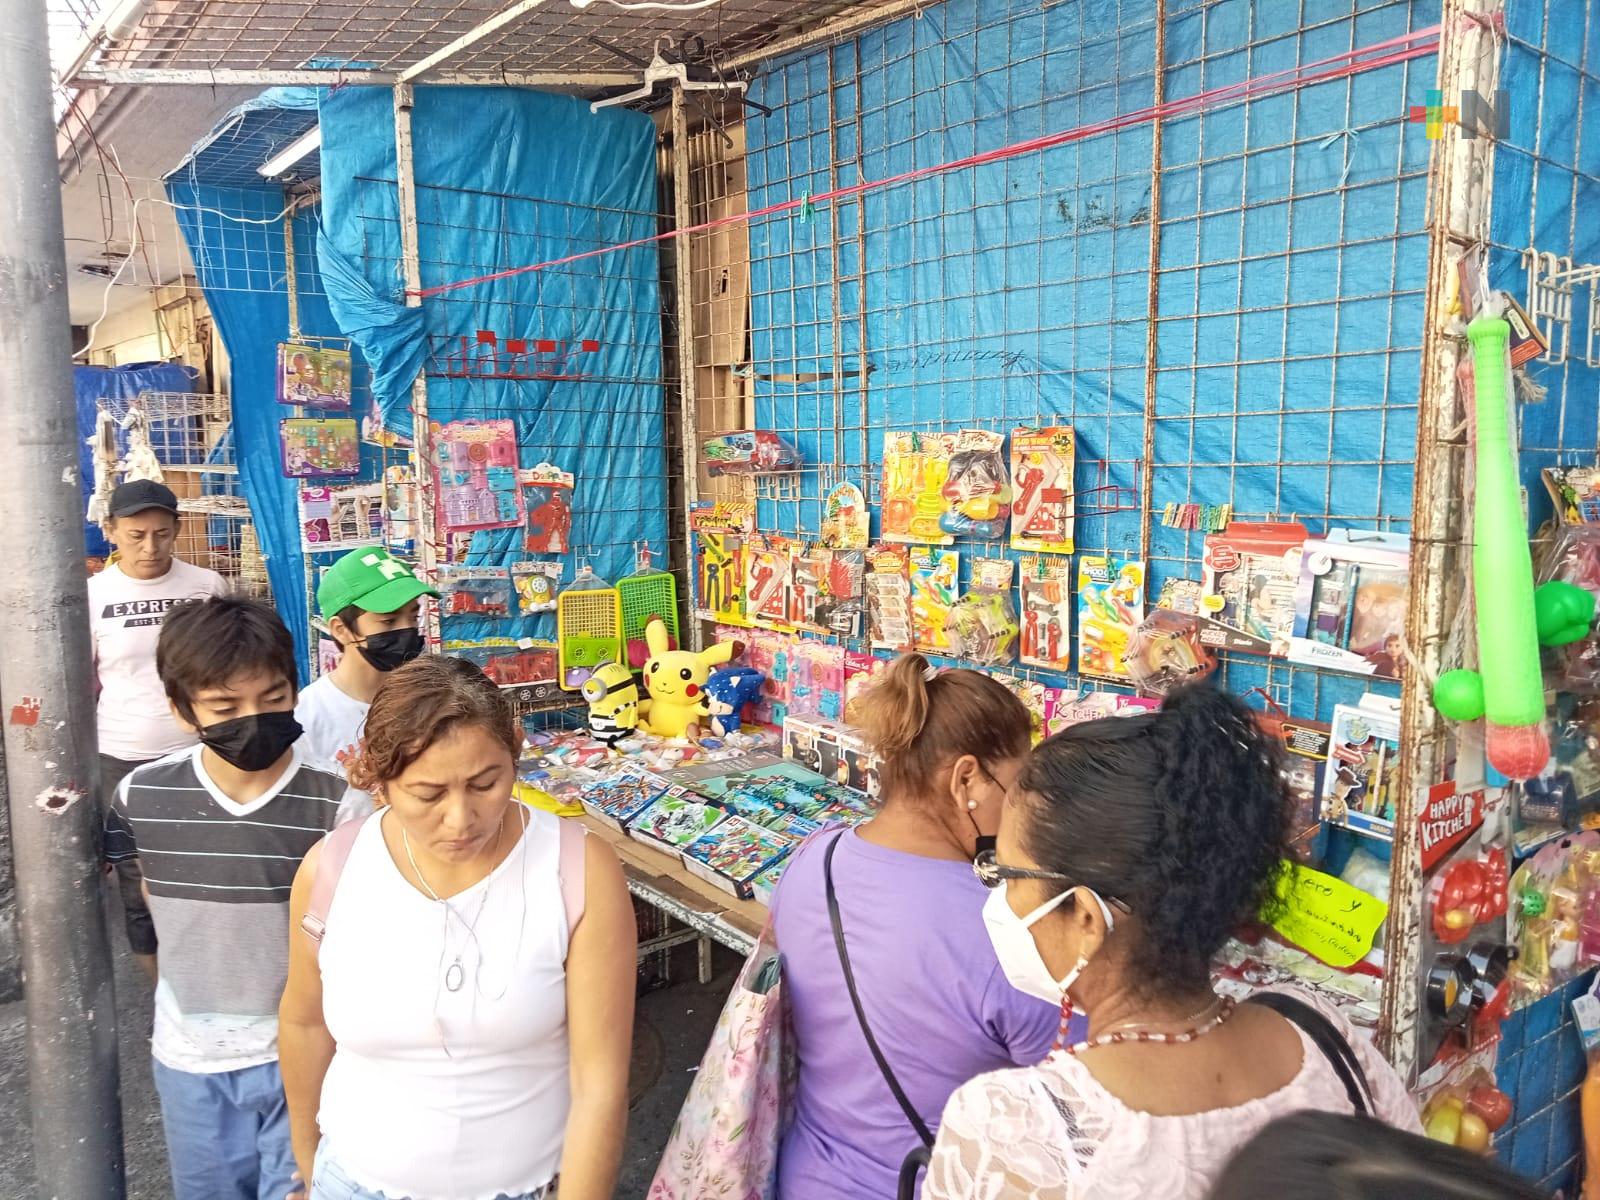 Comerciantes de juguetes alrededor del mercado Hidalgo de Veracruz registran bajas ventas